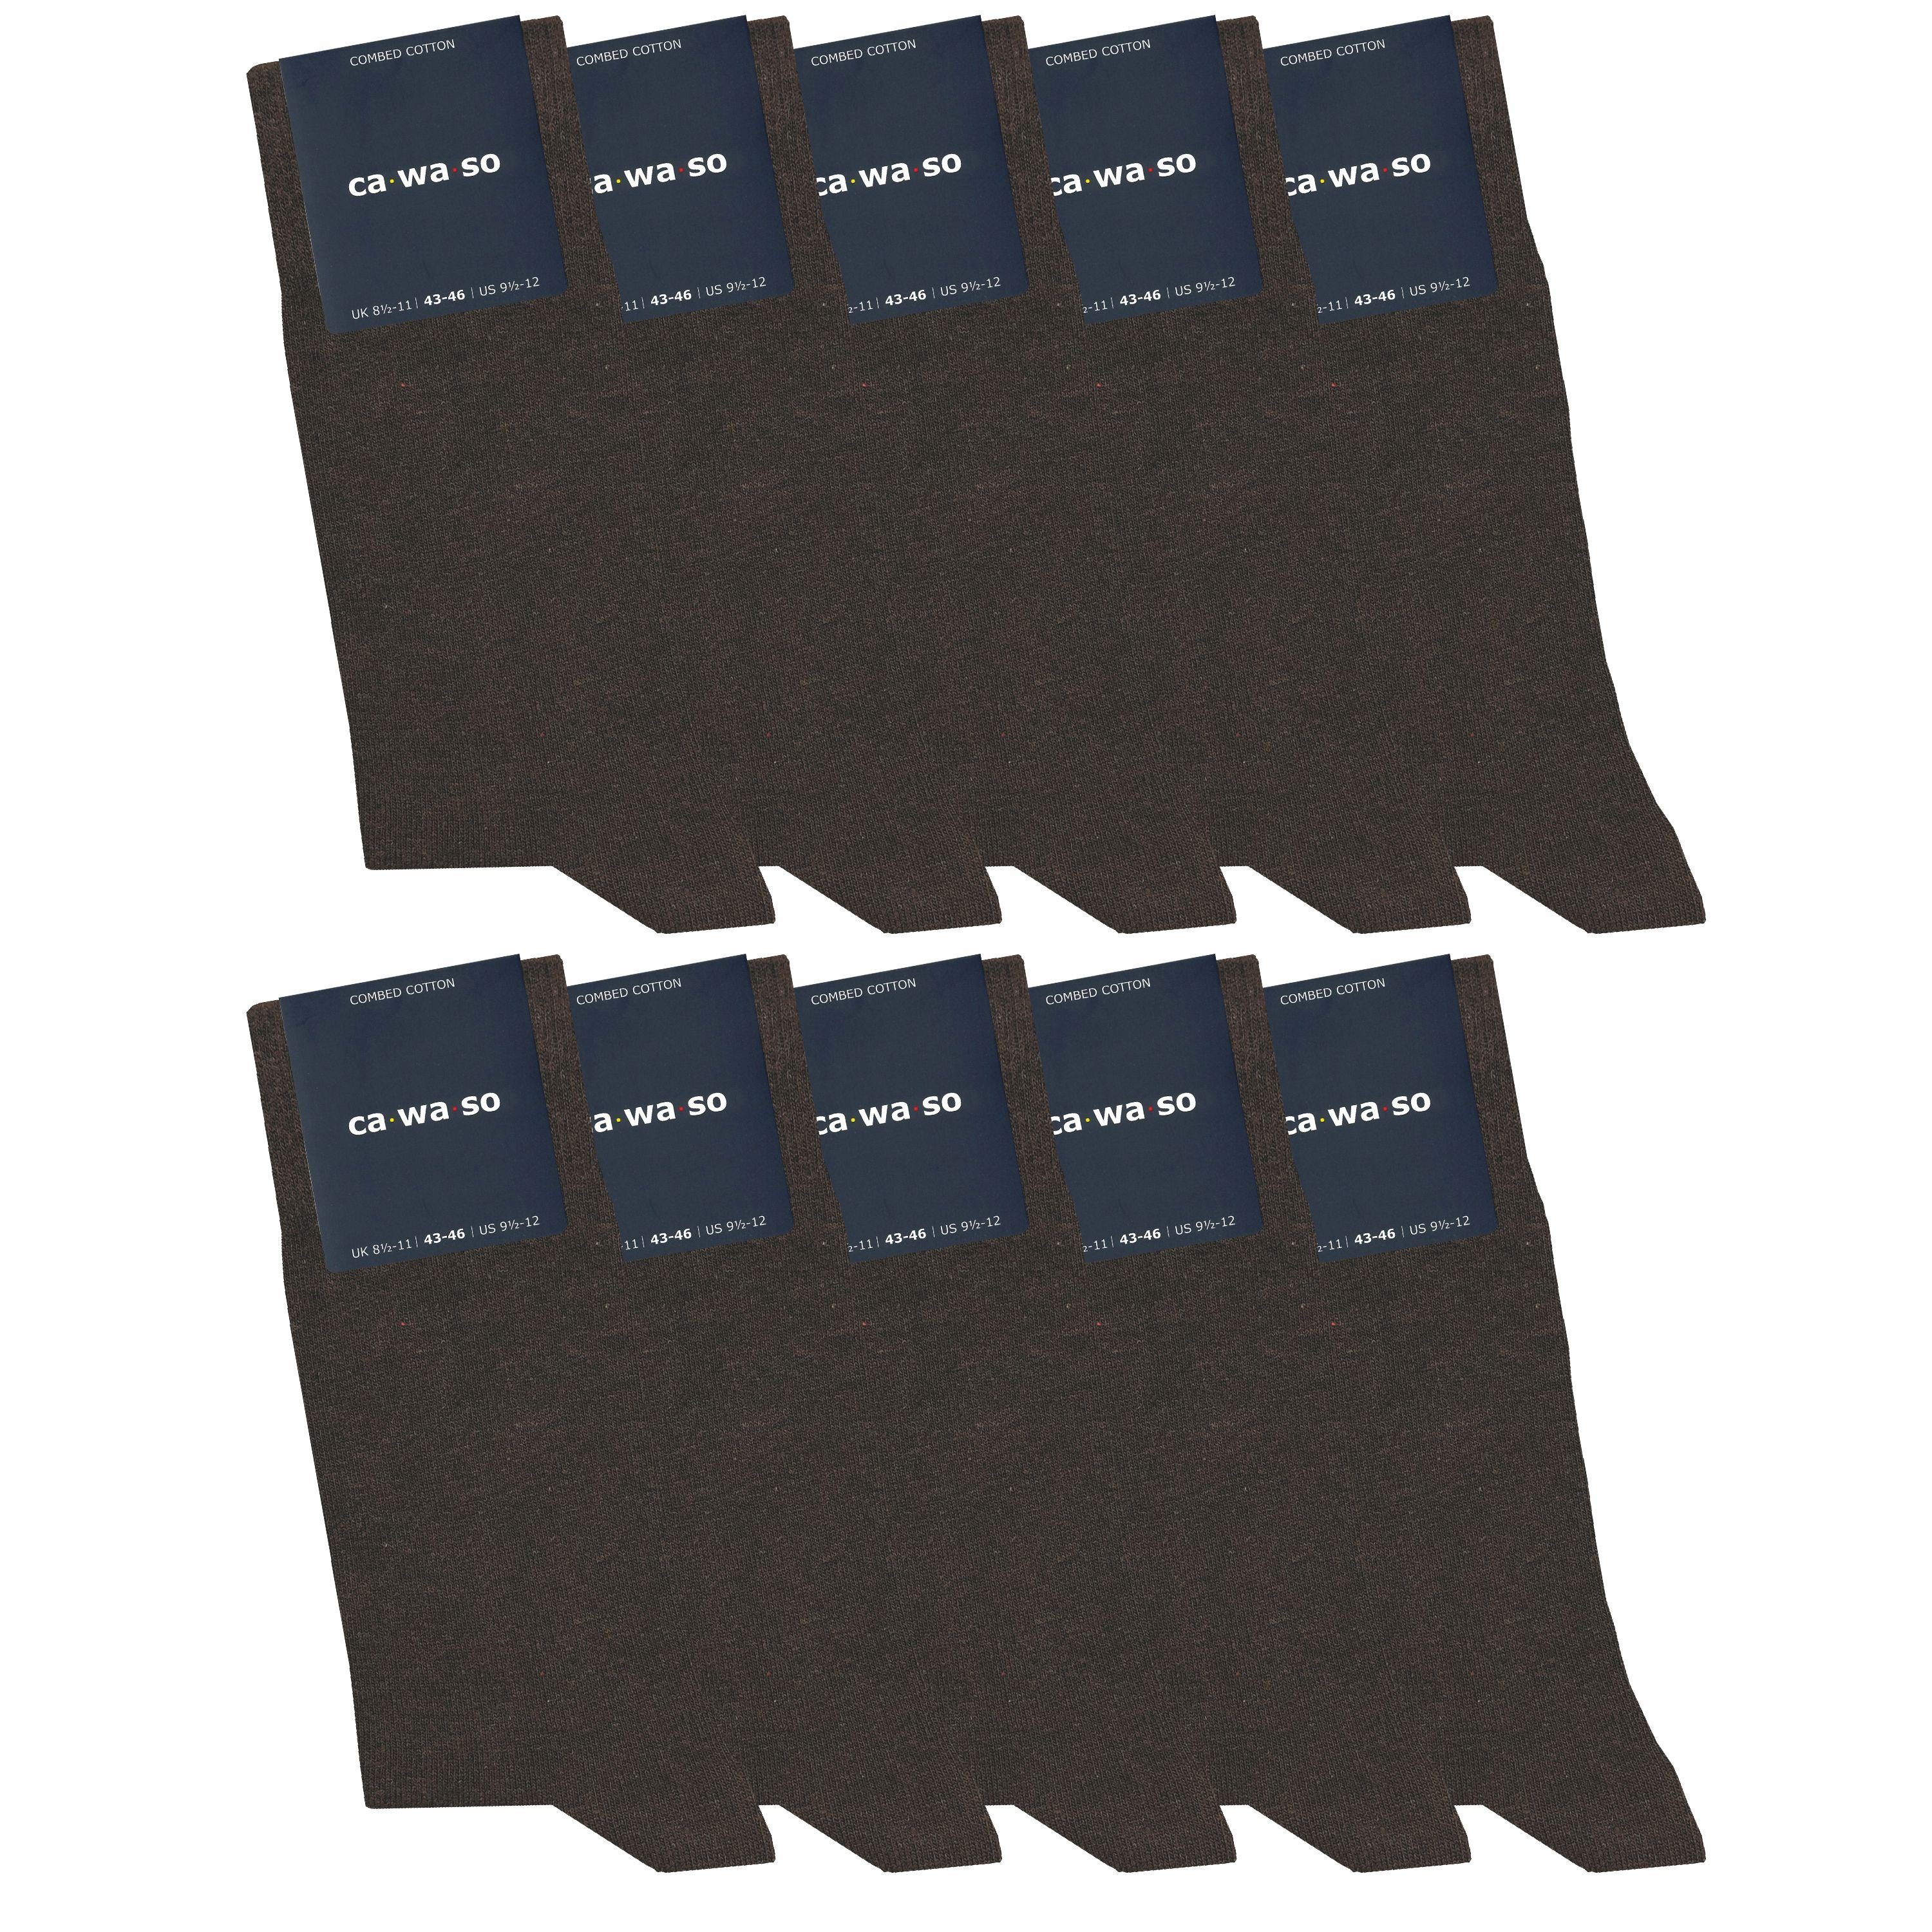 ca·wa·so Socken für Damen & Herren - bequem & weich - aus doppelt gekämmter Baumwolle (10 Paar) Socken in schwarz, bunt, grau, blau und weiteren Farben braun